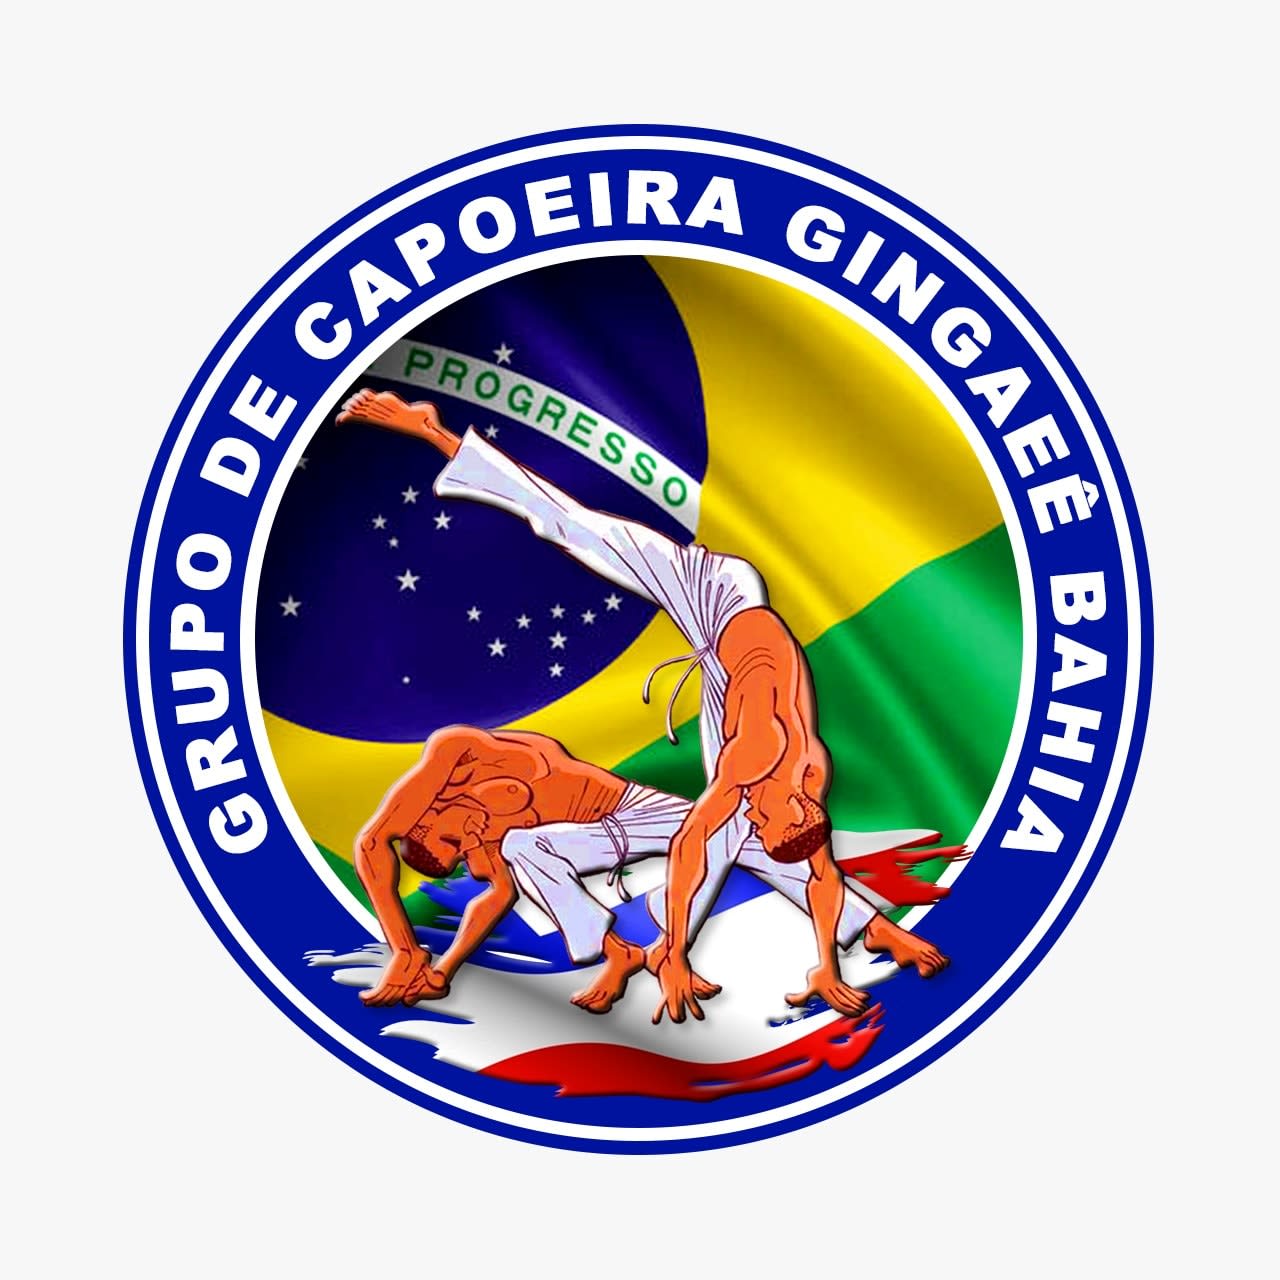 Gingaeê Bahia